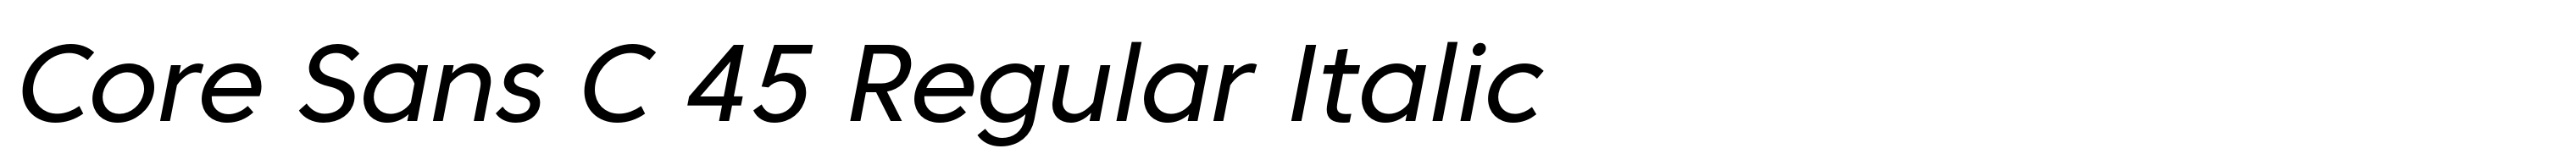 Core Sans C 45 Regular Italic